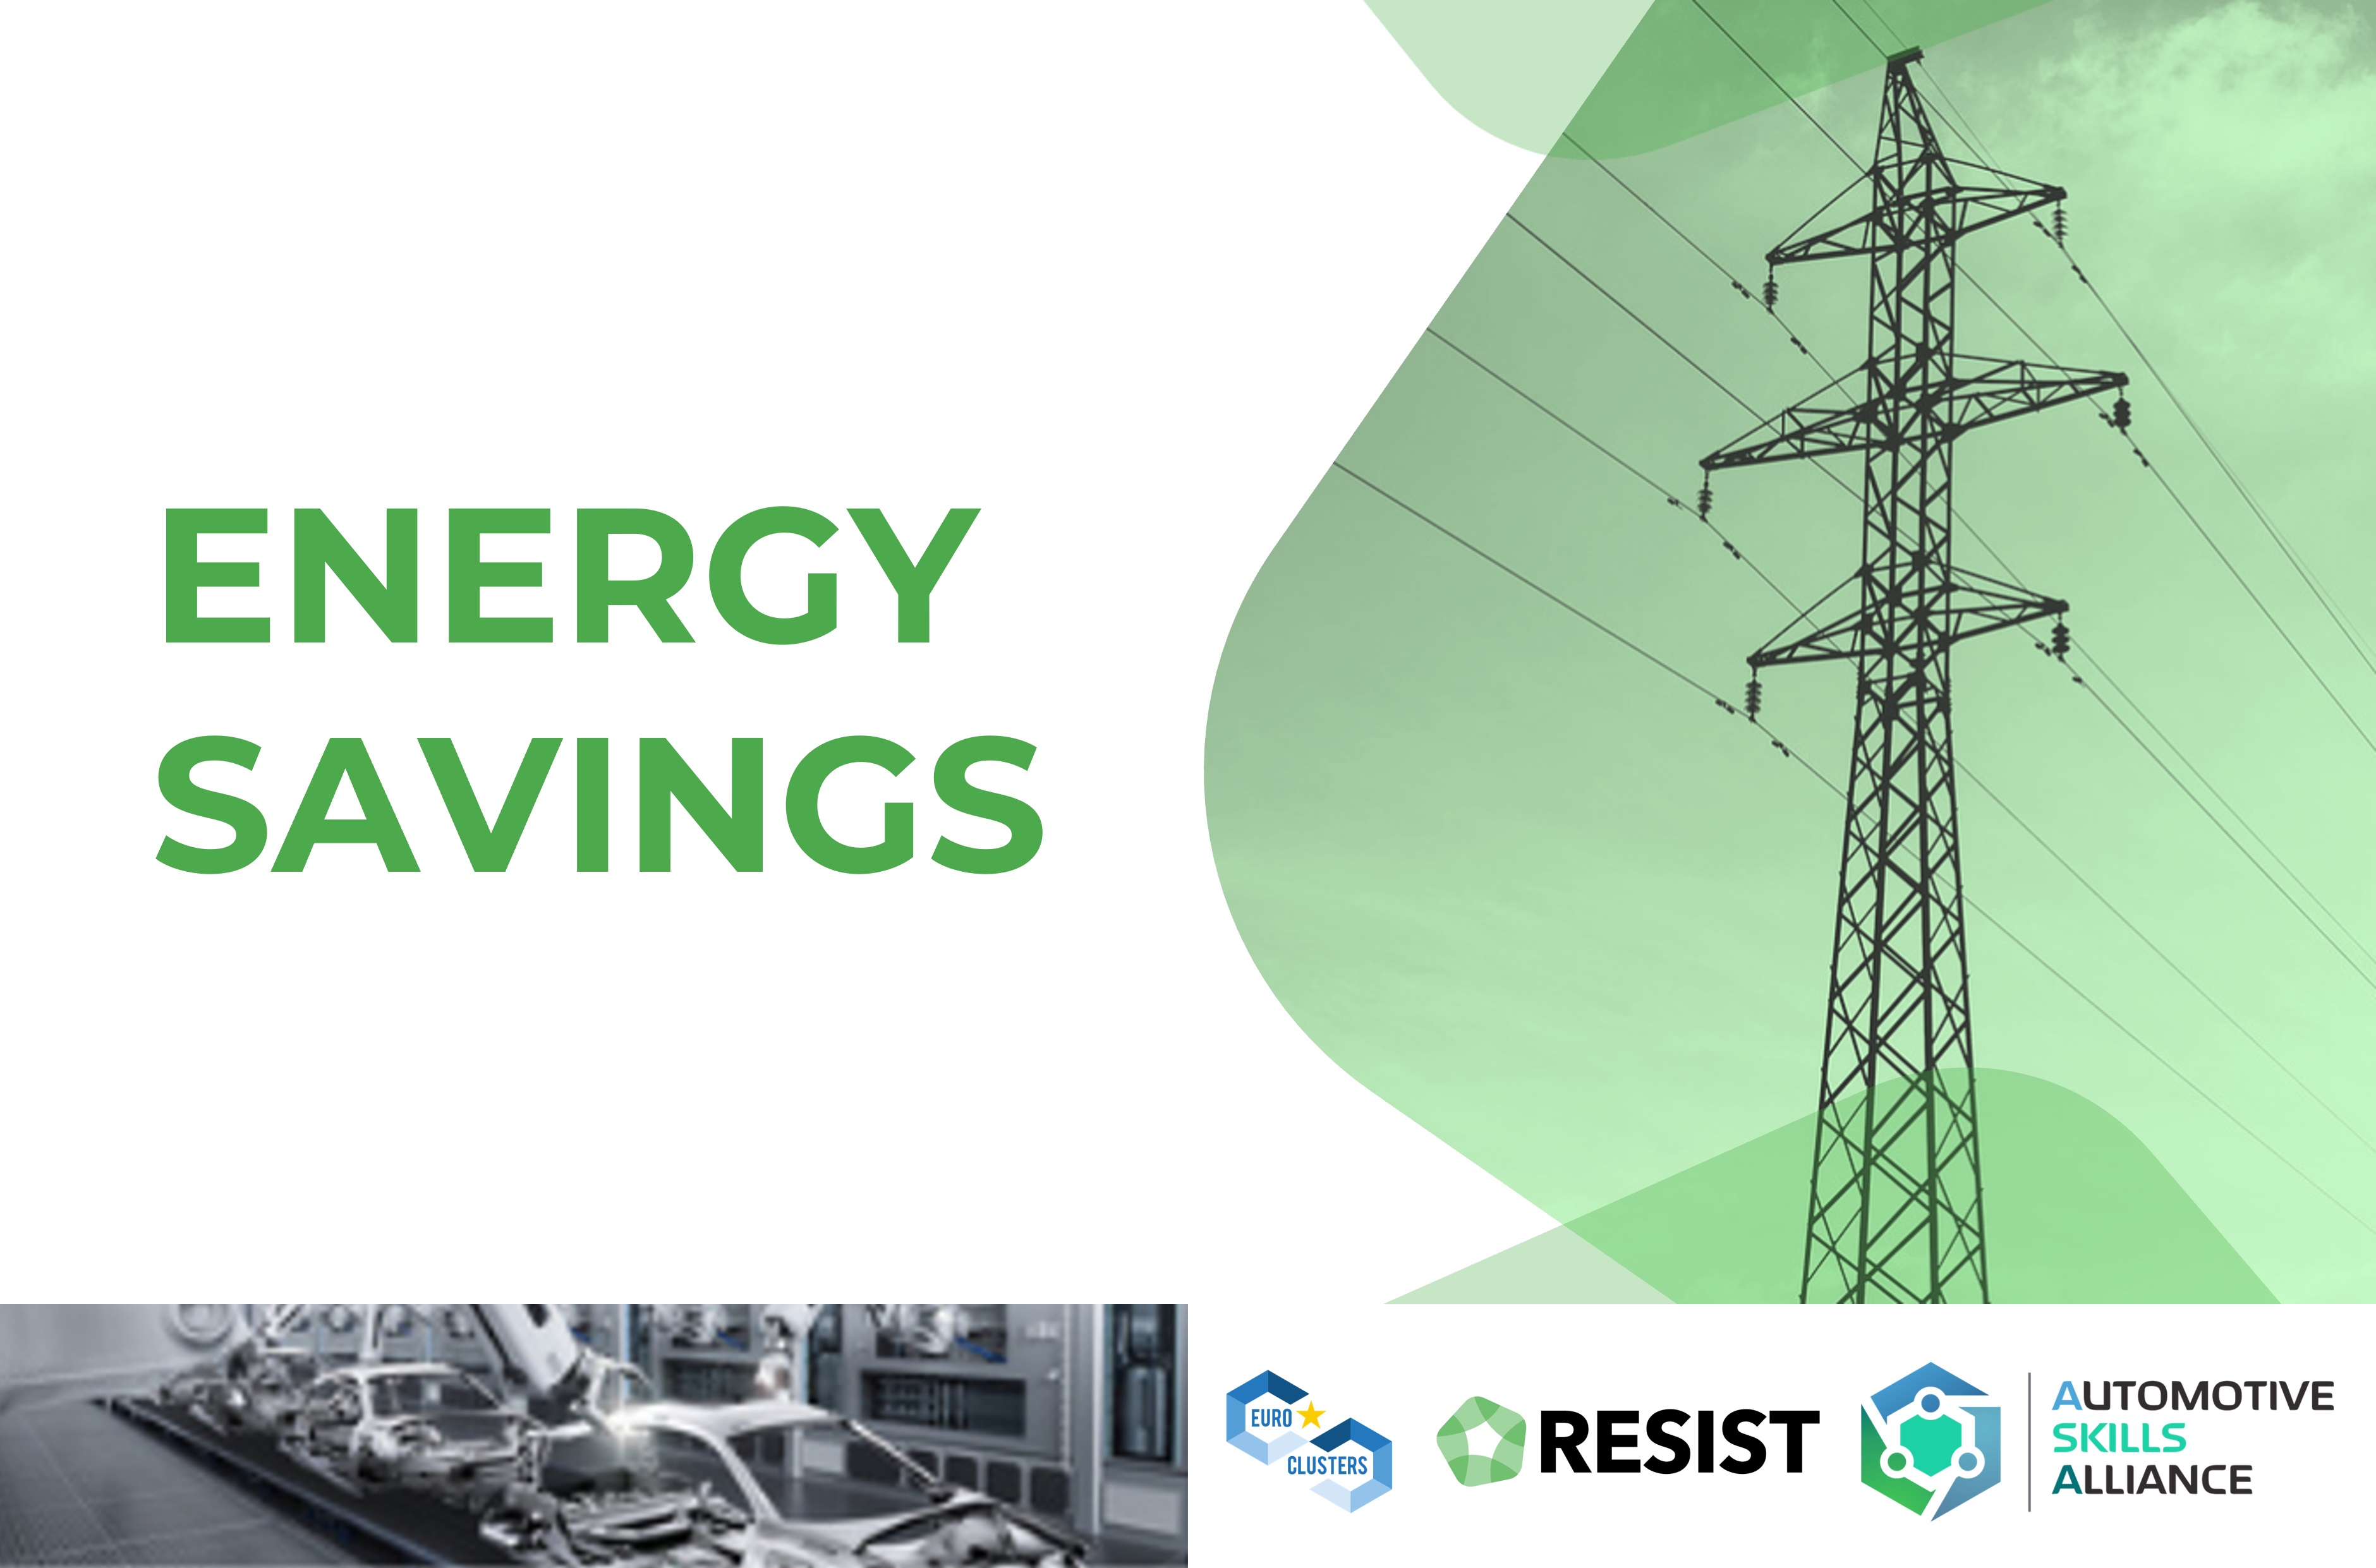 RESIST - Energy savings